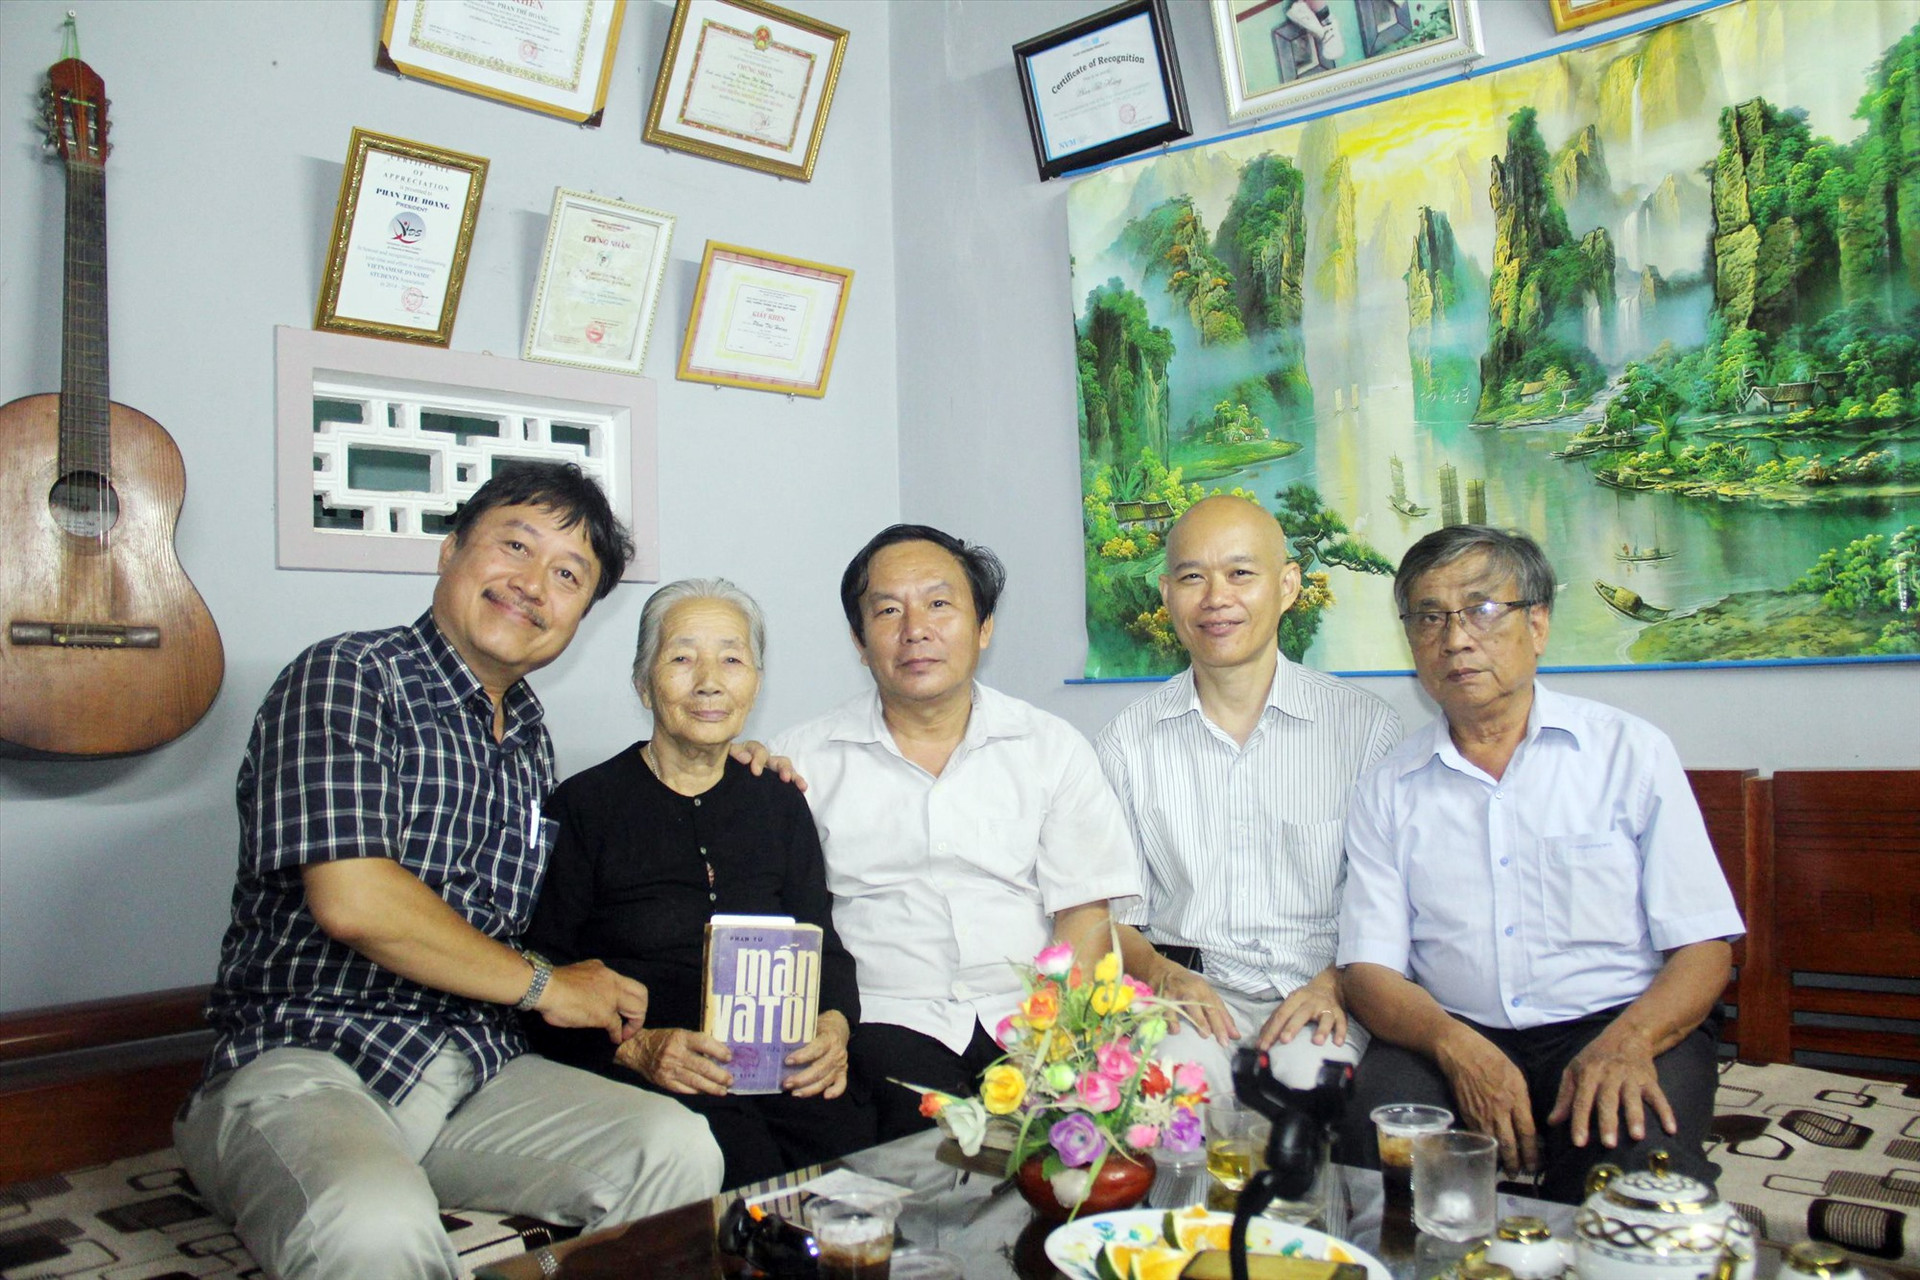 Tác giả Phạm Thông và ông Vũ Hồng Sơn (từ bên phải) cùng bà Võ Thị Phận trong ngày gặp lại sau khi được “minh oan”.Ảnh: V.H.S